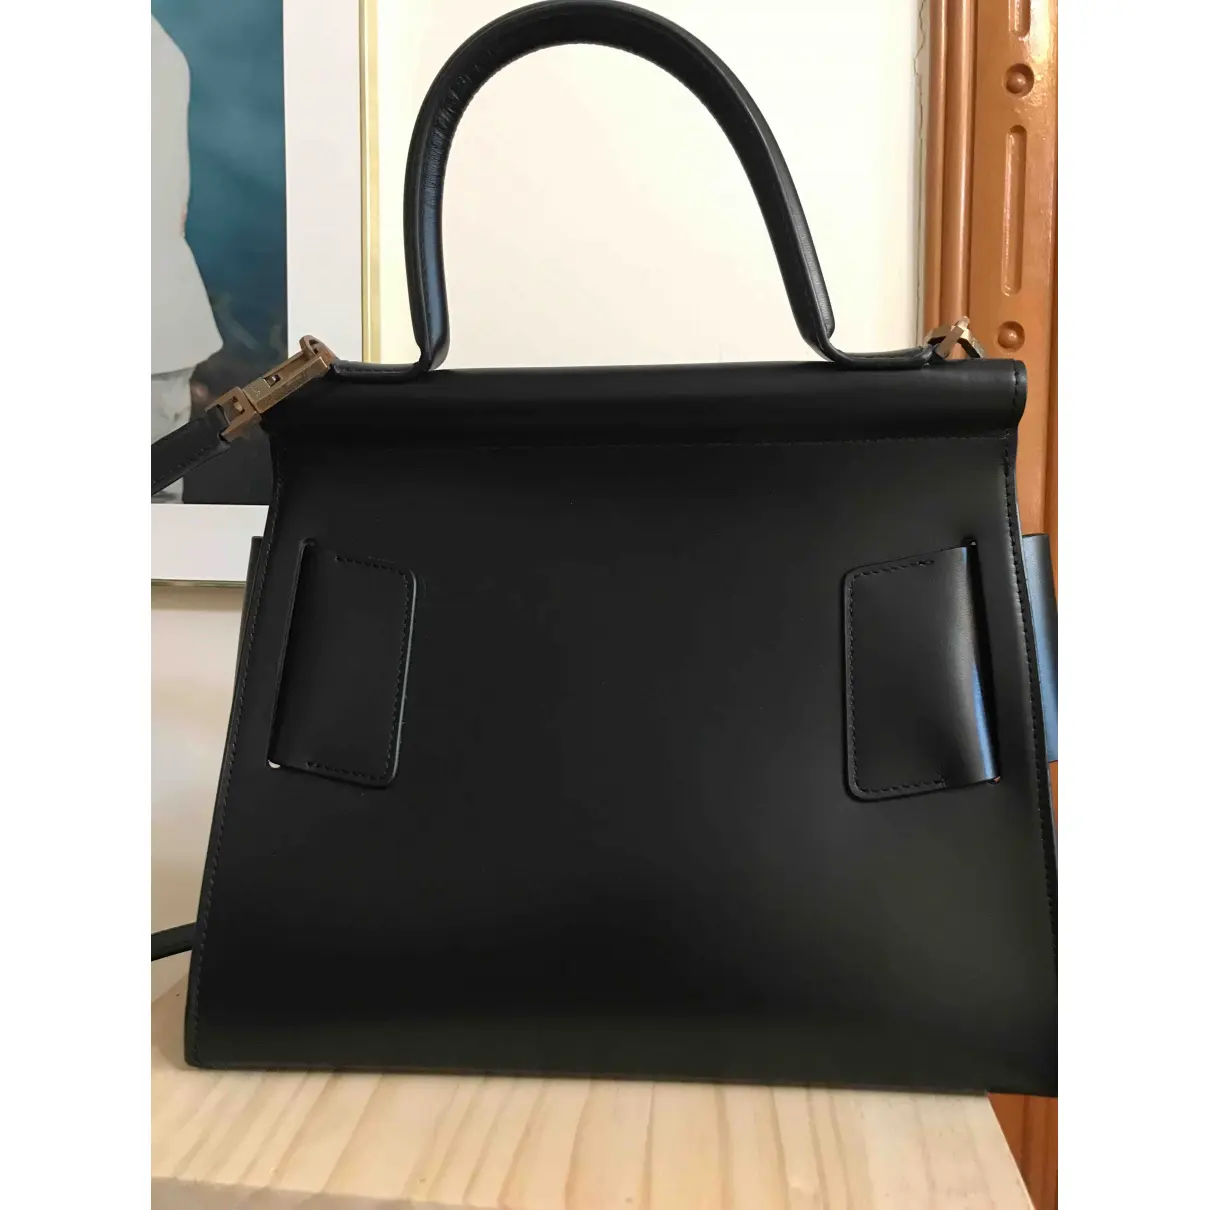 Buy Boyy Leather handbag online